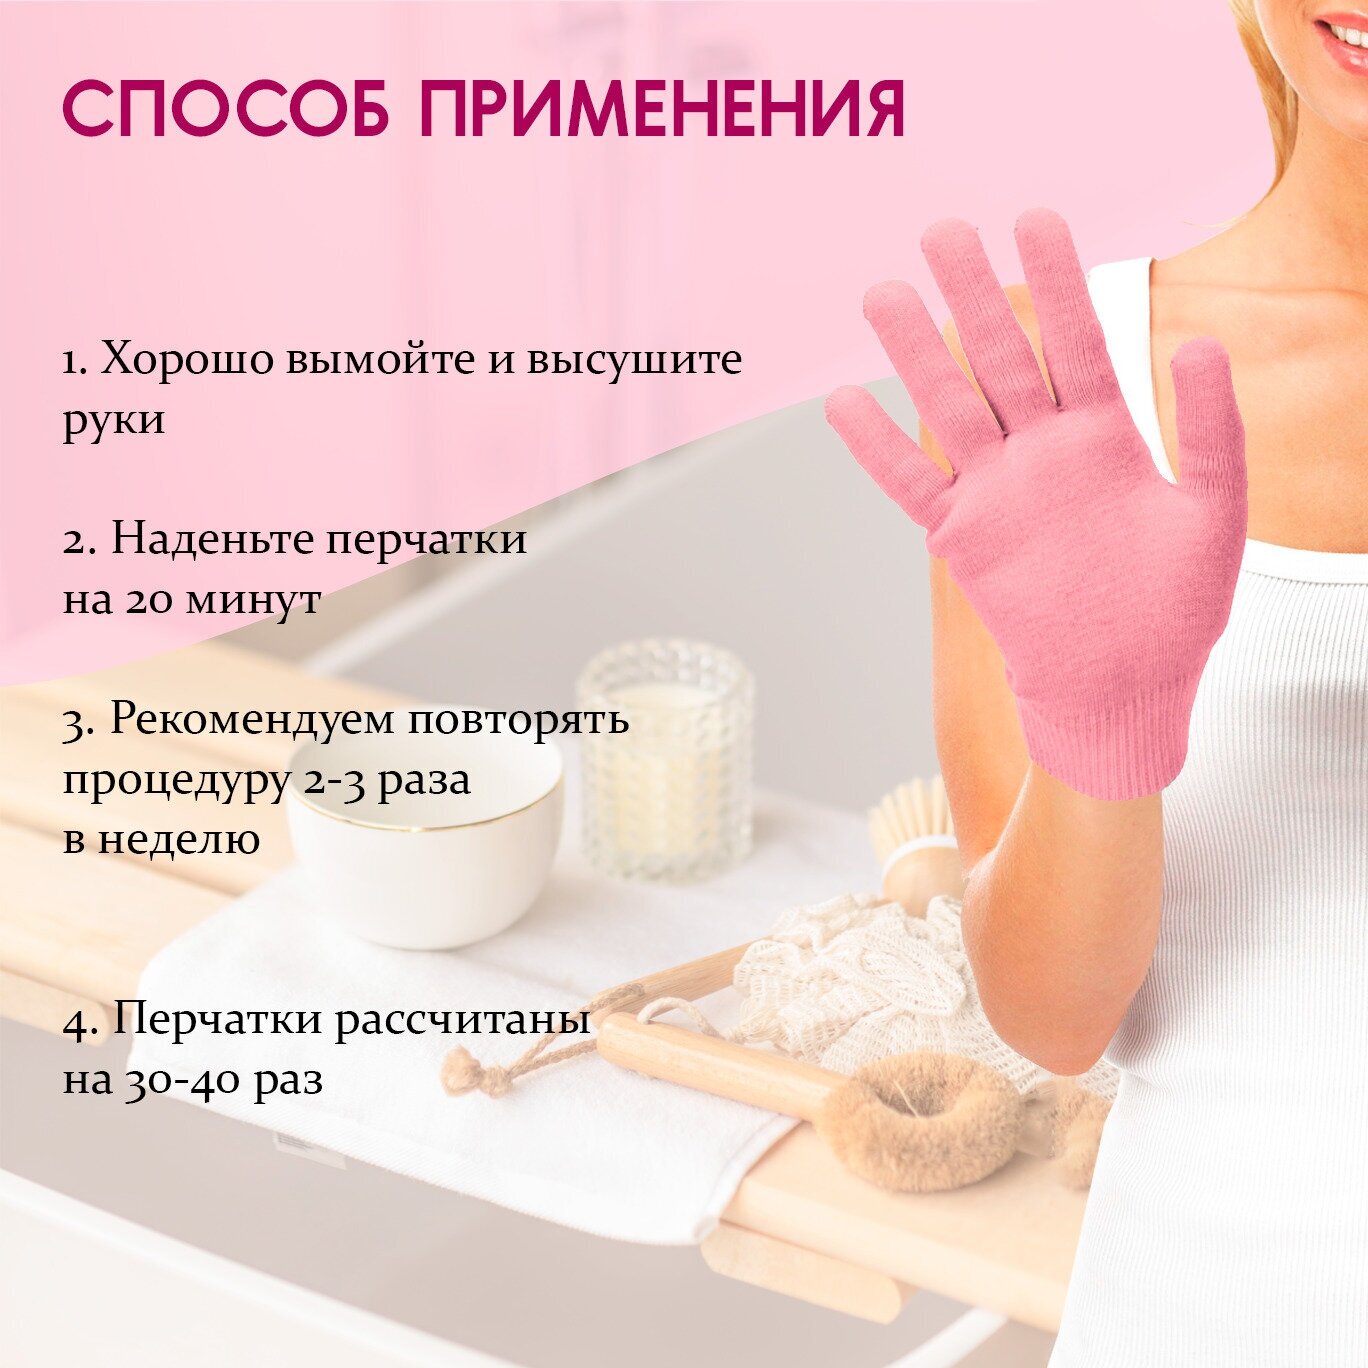 Многоразовые увлажняющие гелевые спа-перчатки розовые Lian Beauty Acessories